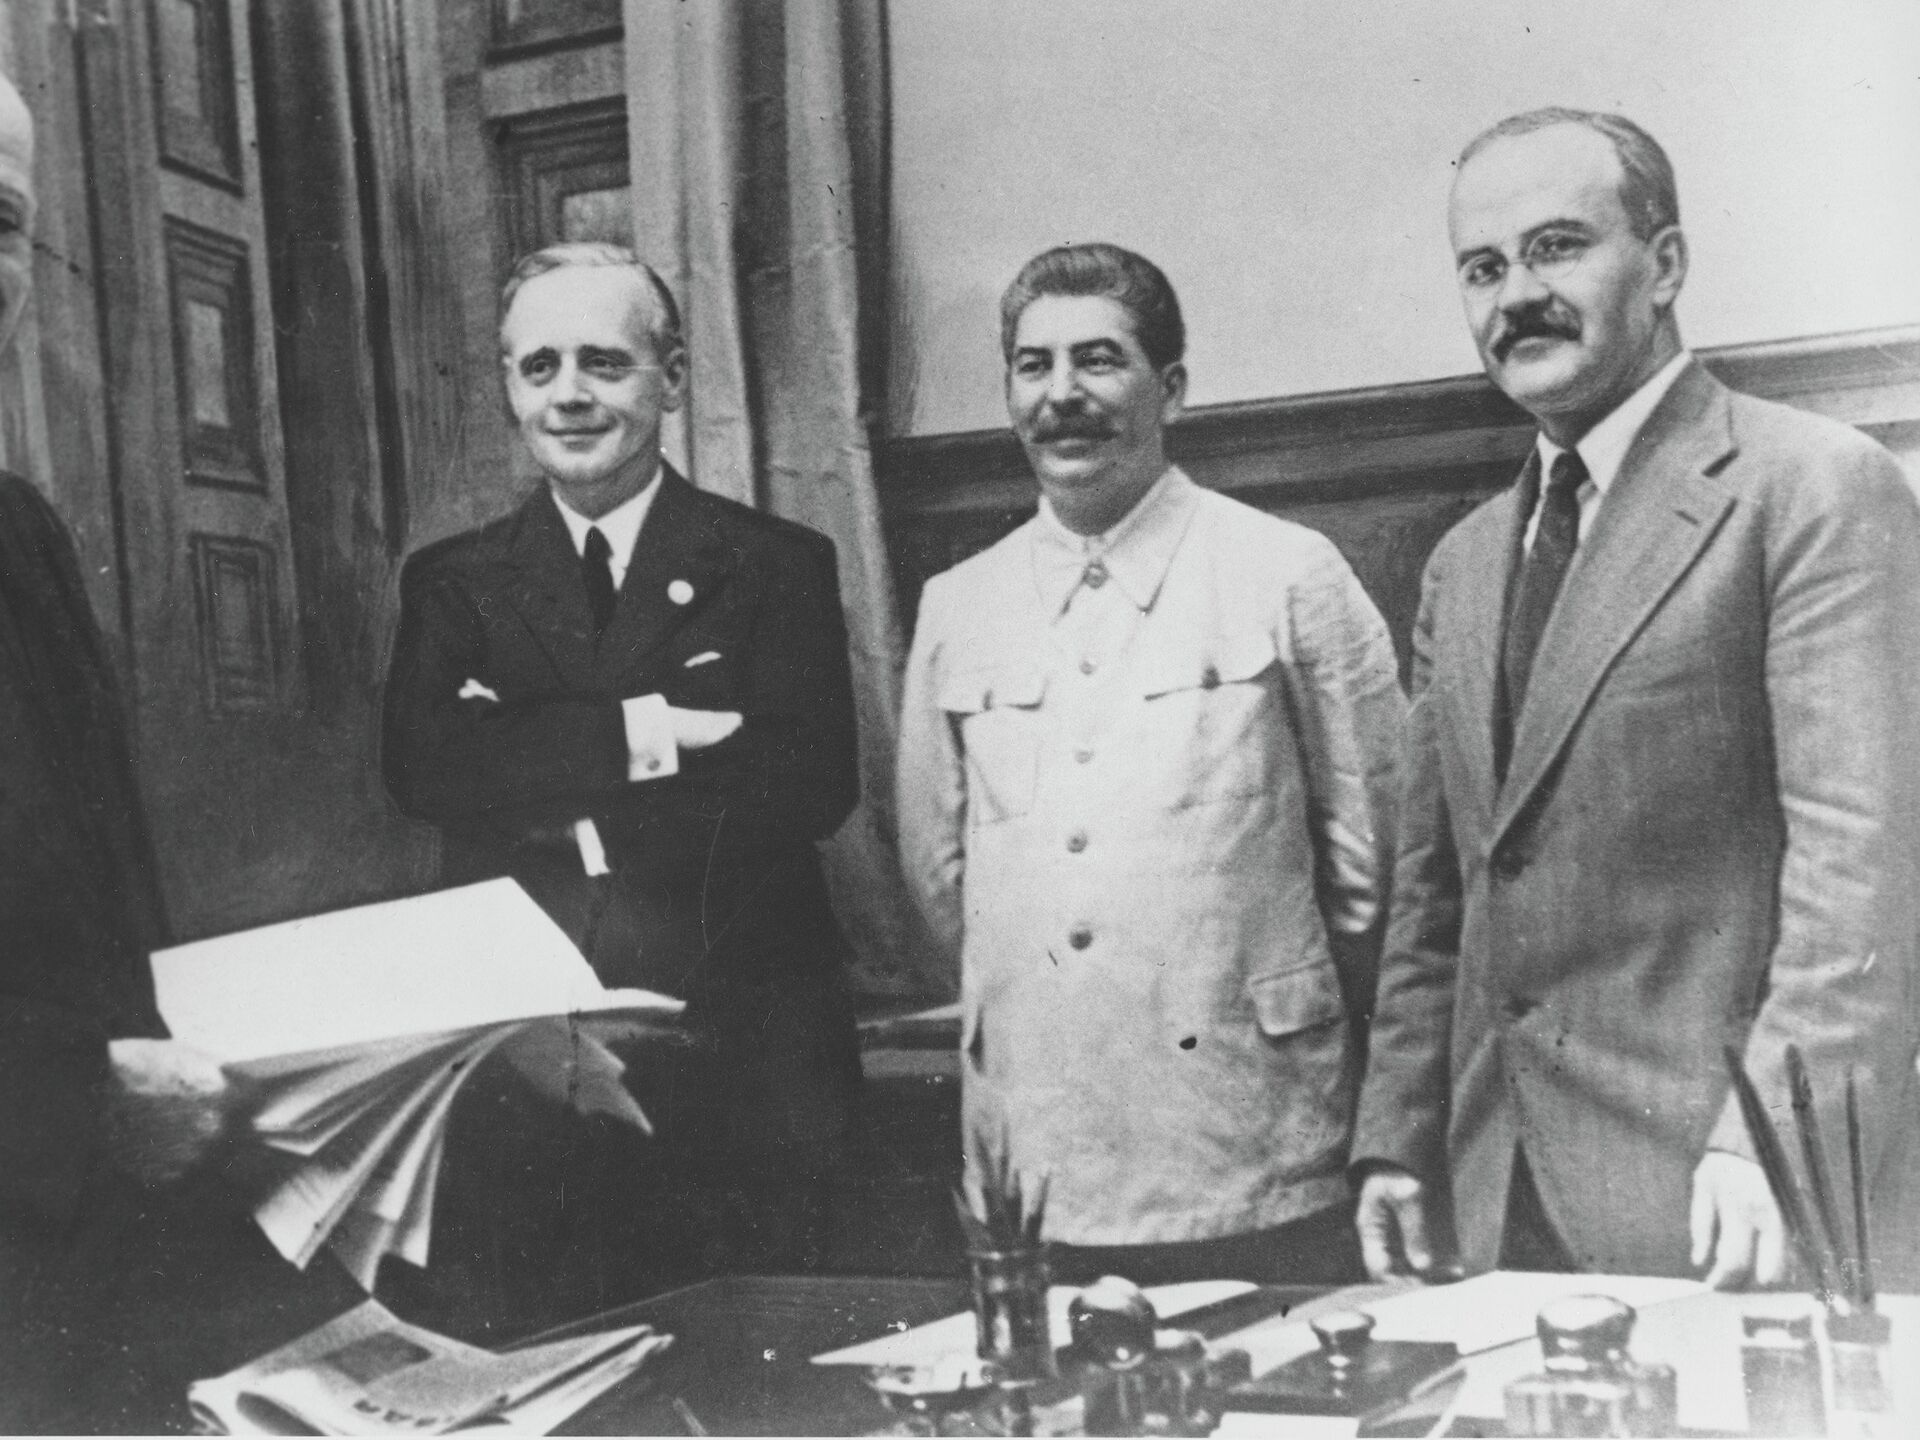 Доклад: Новые подходы к освещению советско-германского пакта о ненападении 23 августа 1939 г